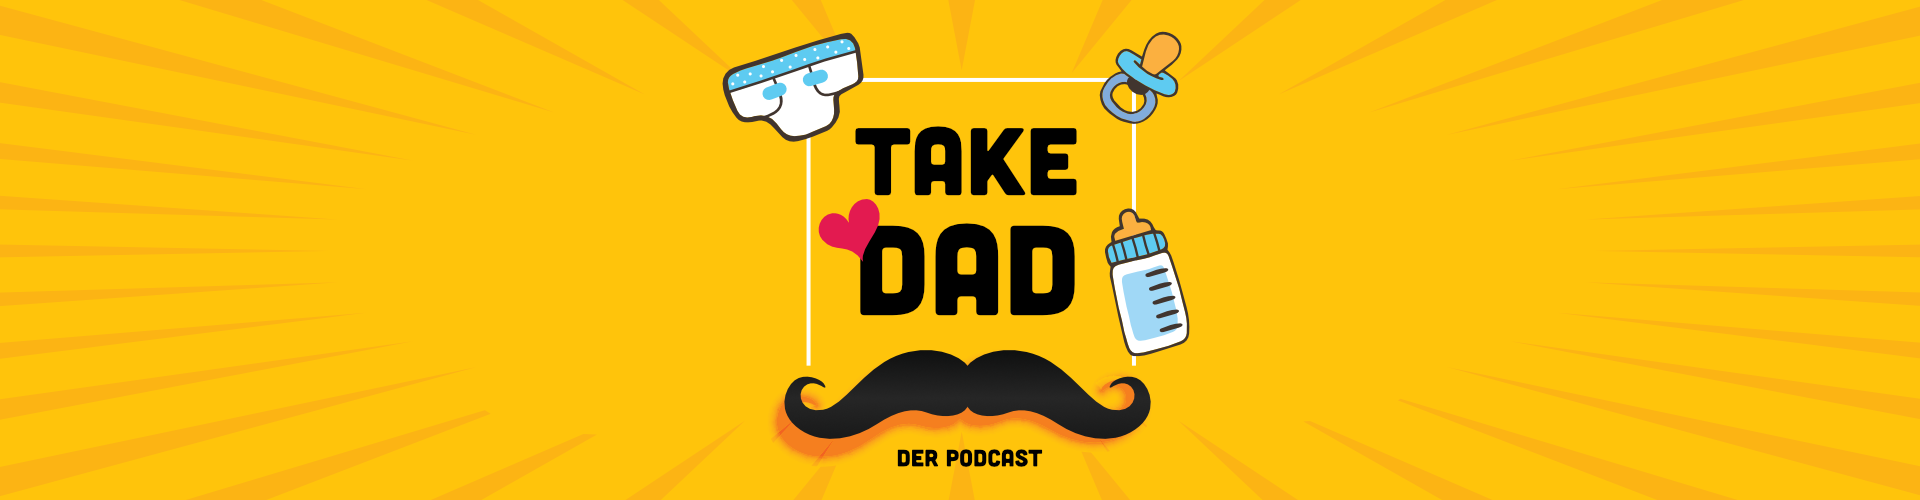 Take Dad